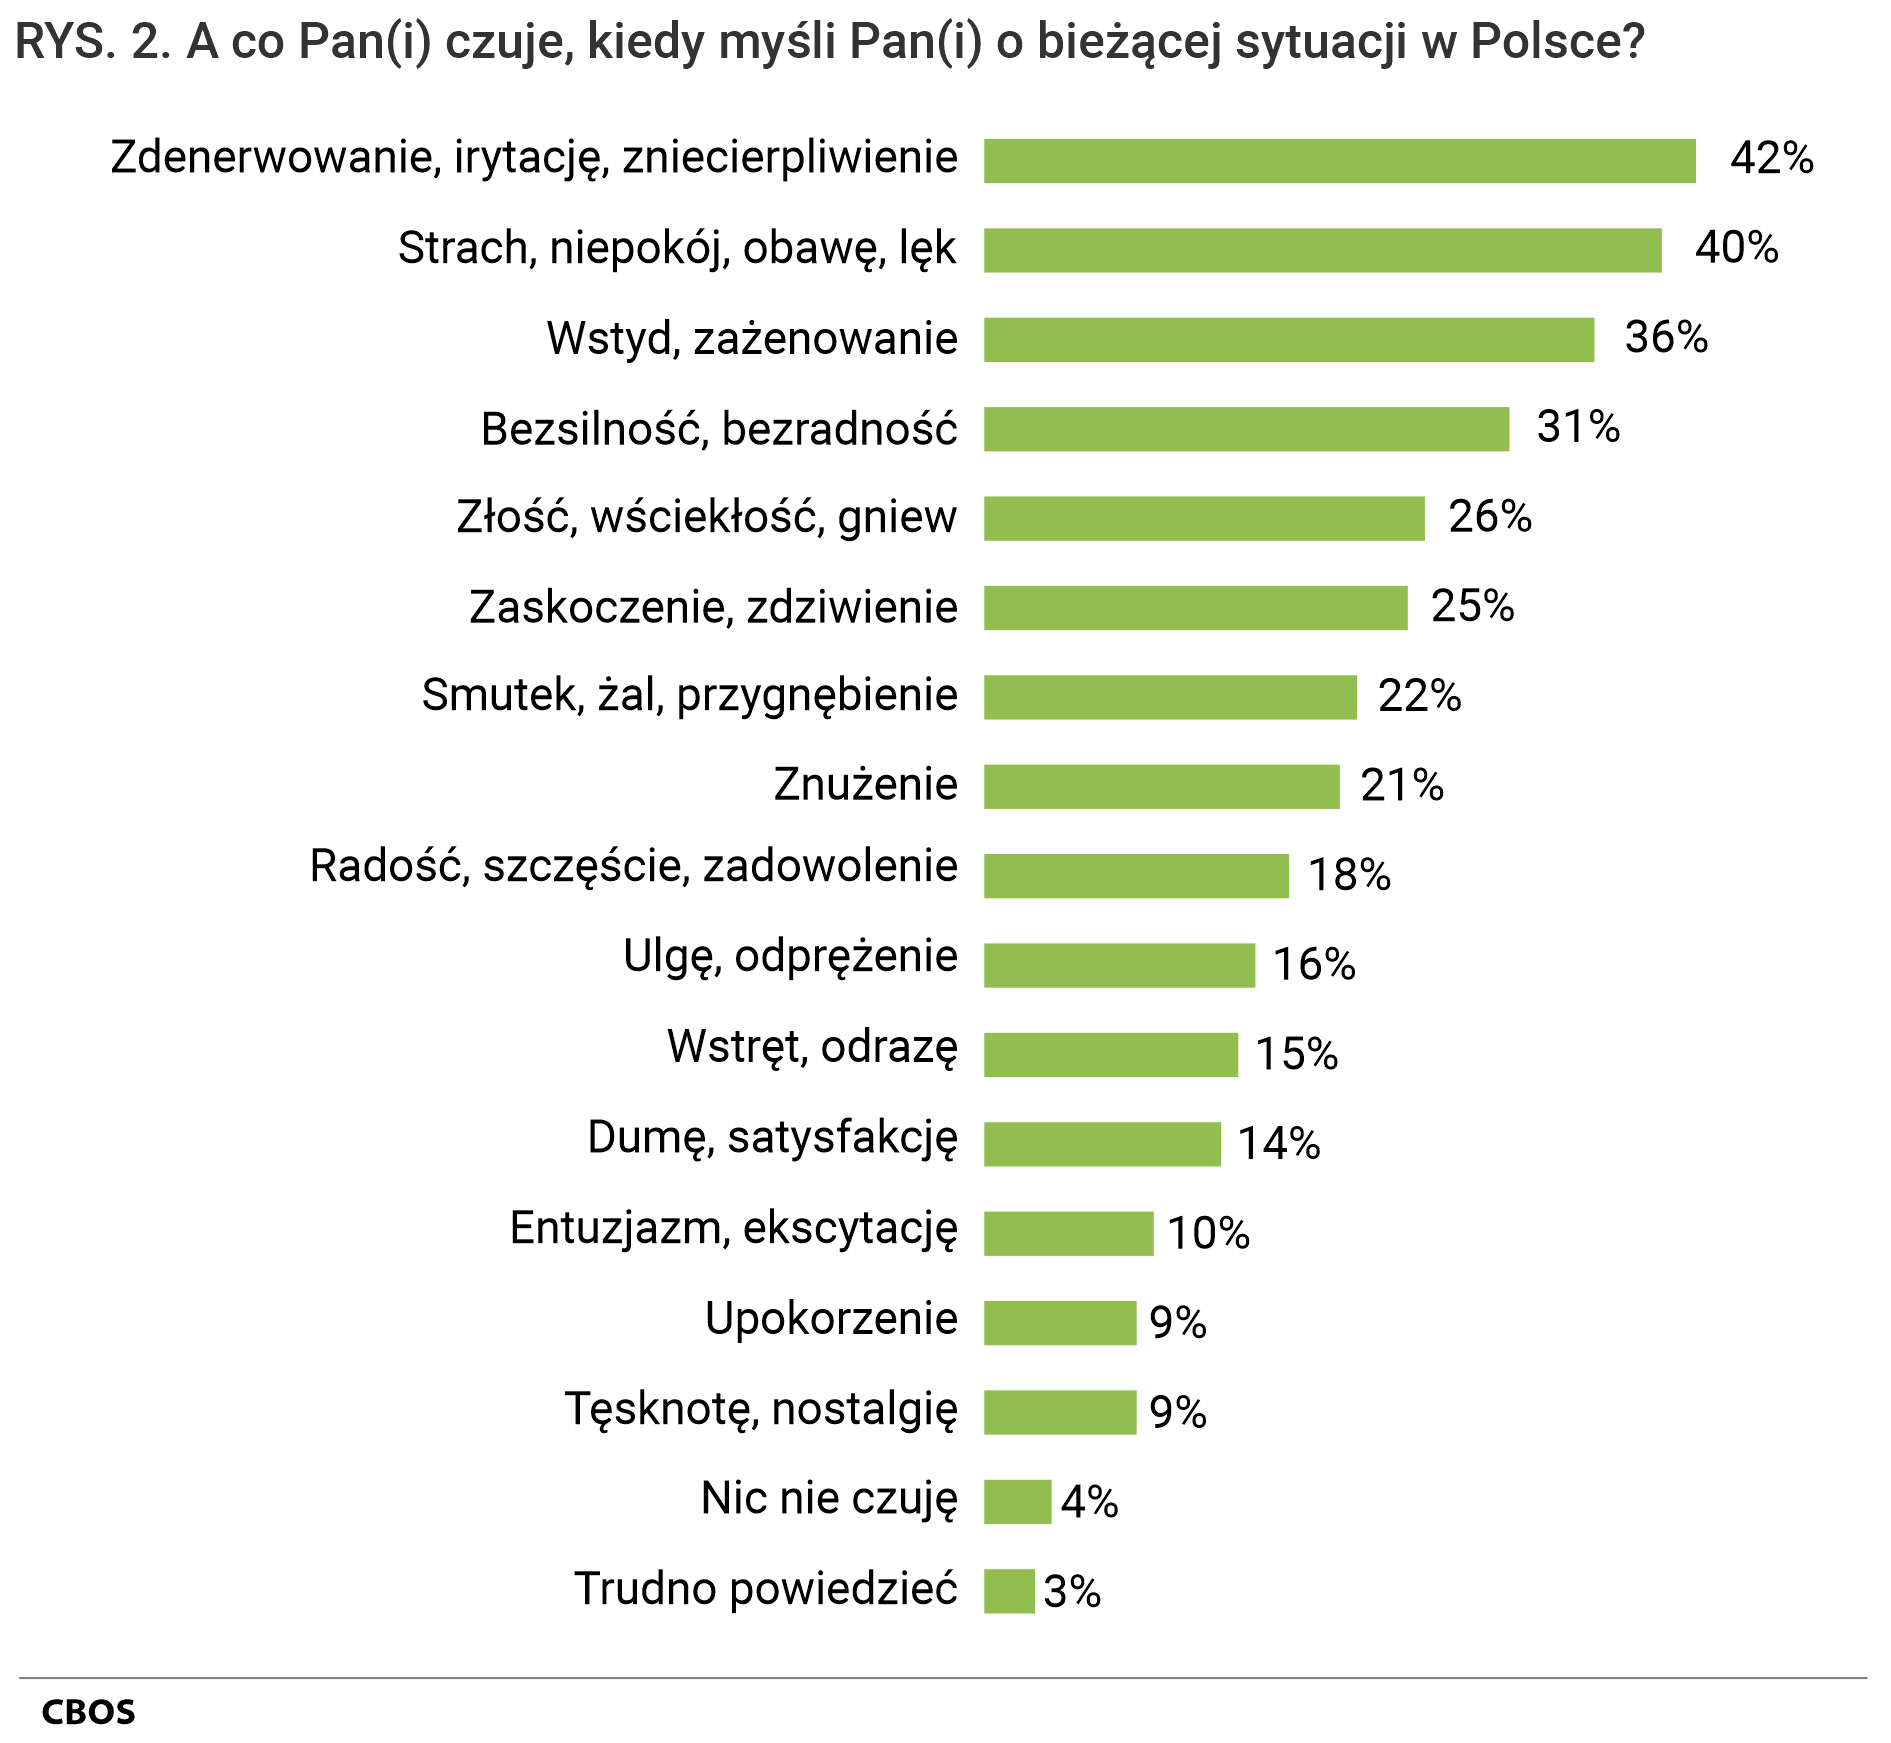 Rysunek  2. A co Pan (Pani) czuje, kiedy myśli Pan (Pani) o bieżącej sytuacji w Polsce?  Zdenerwowanie, irytację, zniecierpliwienie - 42%; Strach, niepokój, obawę, lęk - 40%; Wstyd, zażenowanie - 36%; Bezsilność, bezradność - 31%; Złość, wściekłość, gniew - 26%; Zaskoczenie, zdziwienie - 25%; Smutek, żal, przygnębienie - 22%; Znużenie - 21%; Radość, szczęście, zadowolenie - 18%; Ulgę, odprężenie - 16%; Wstręt, odrazę - 15%; Dumę, satysfakcję - 14%; Entuzjazm, ekscytację - 10%; Upokorzenie - 9%; Tęsknotę, nostalgię - 9%; Nic nie czuję - 4%; Trudno powiedzieć - 3%;